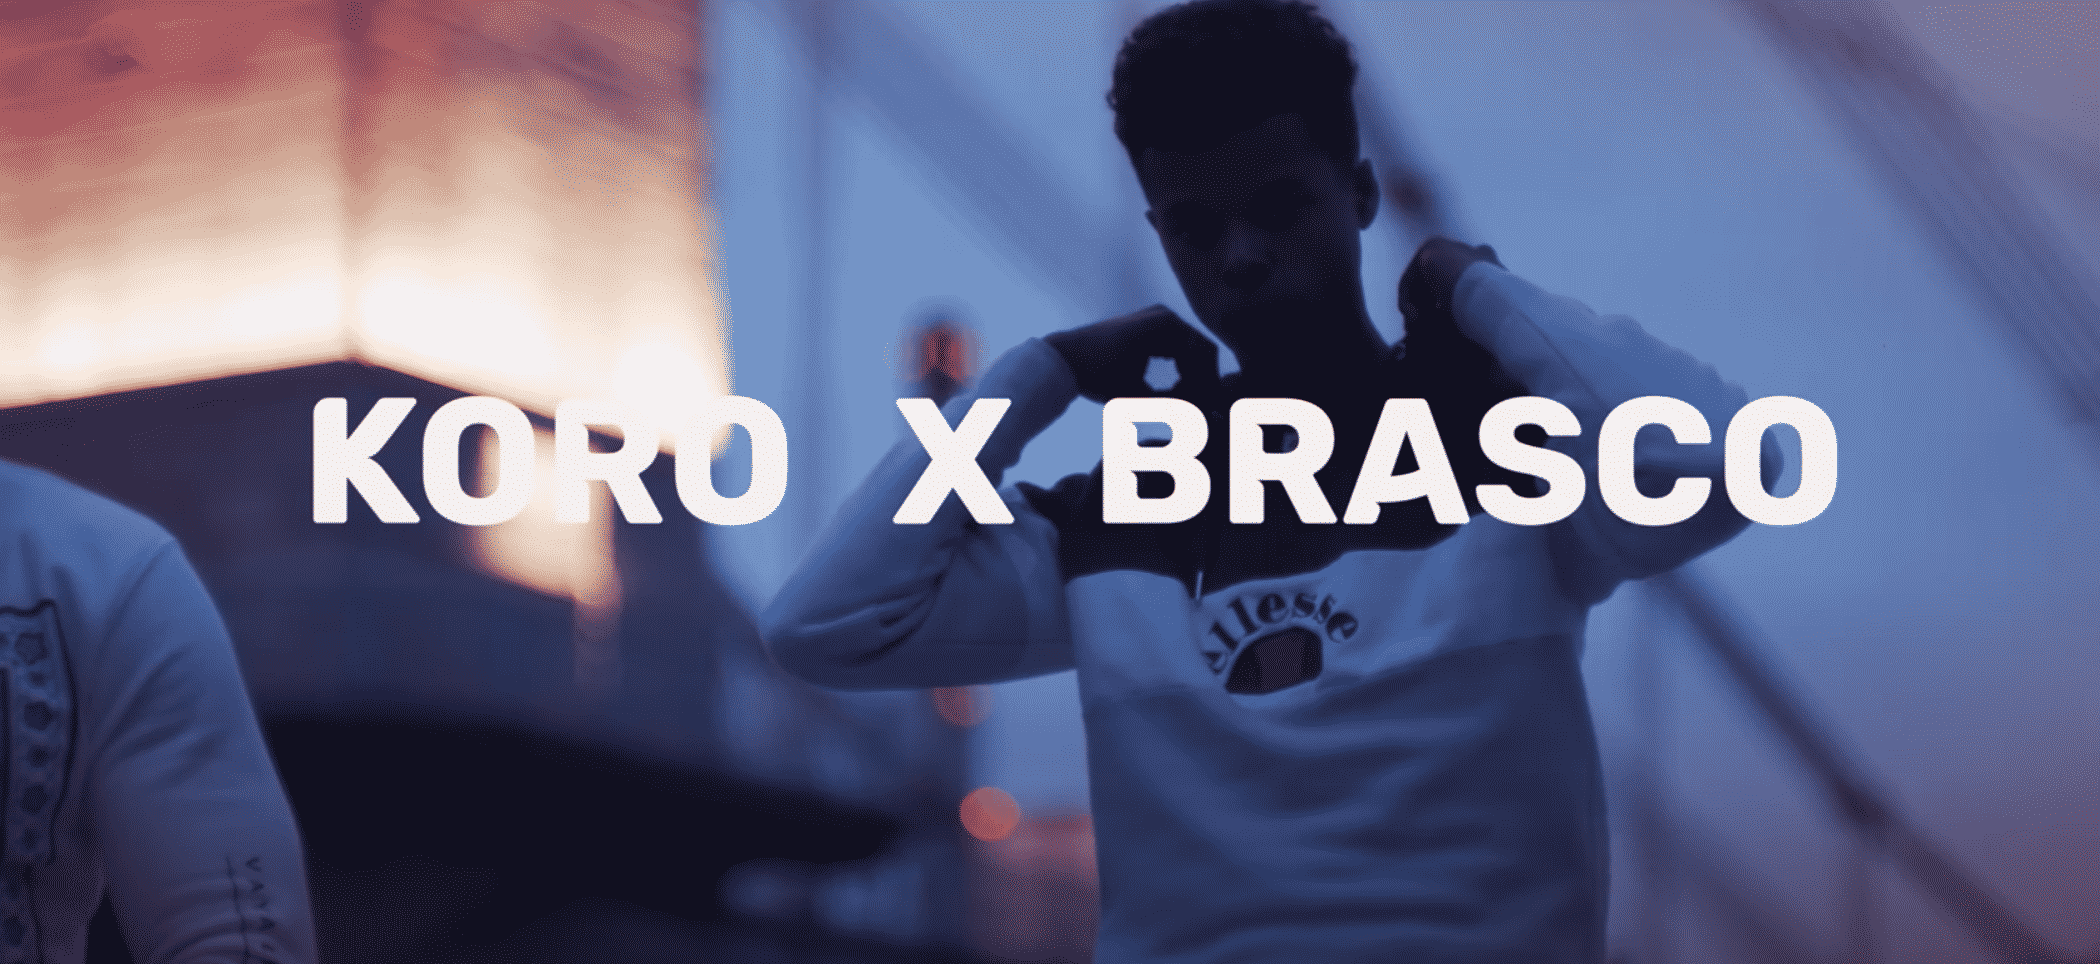 Koro réalise un featuring avec Brasco, c'est "Destiné"